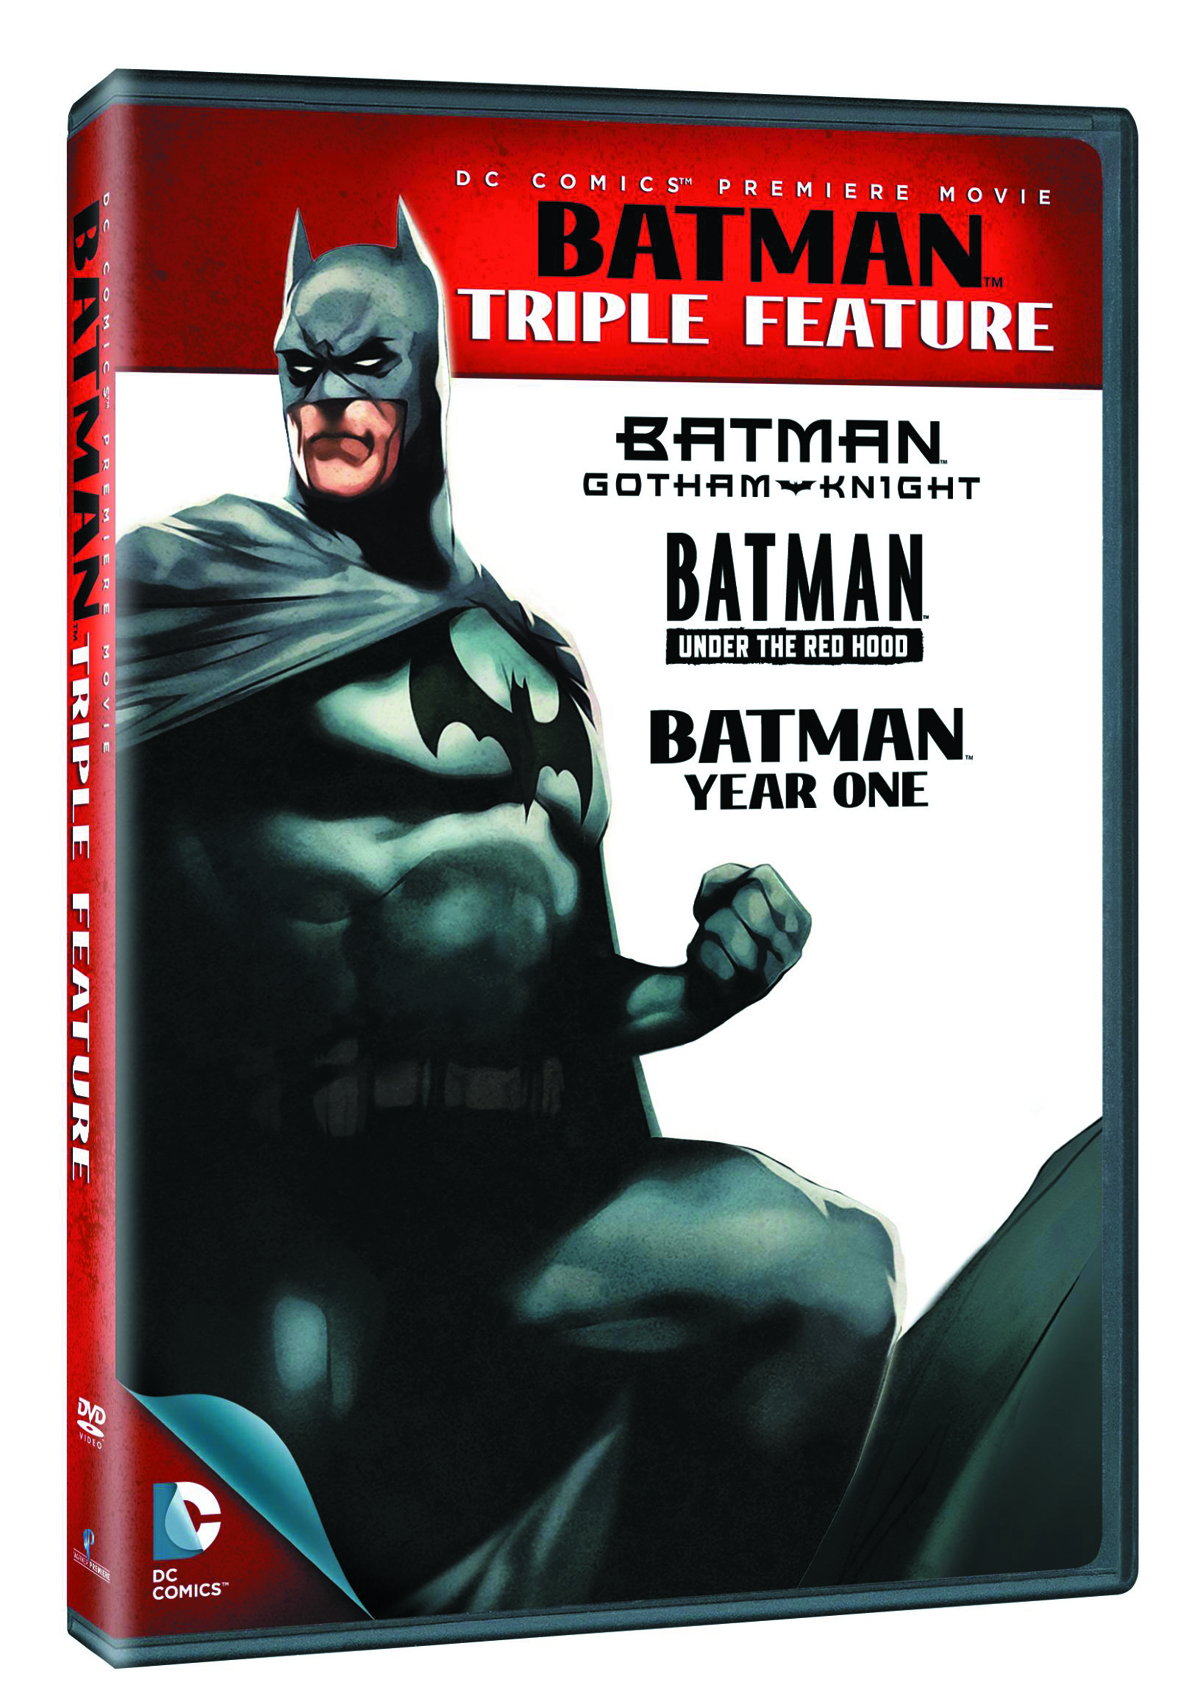 BATMAN TRIPLE FEATURE DVD